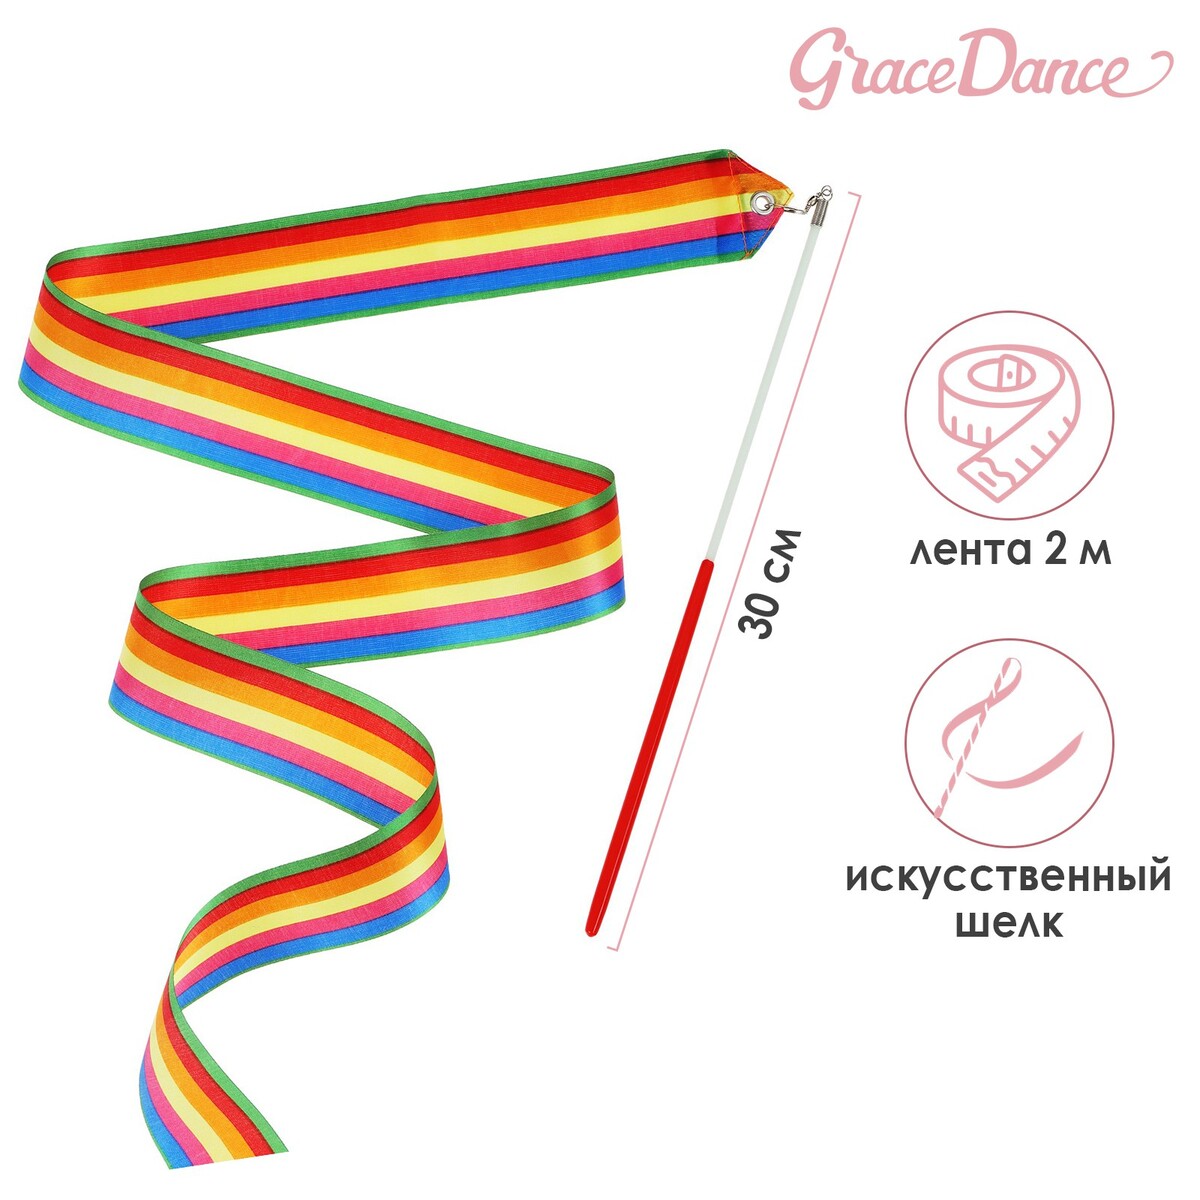 Лента для художественной гимнастики с палочкой grace dance, 2 м, цвет радуга лента для художественной гимнастики с палочкой grace dance 2 м радуга